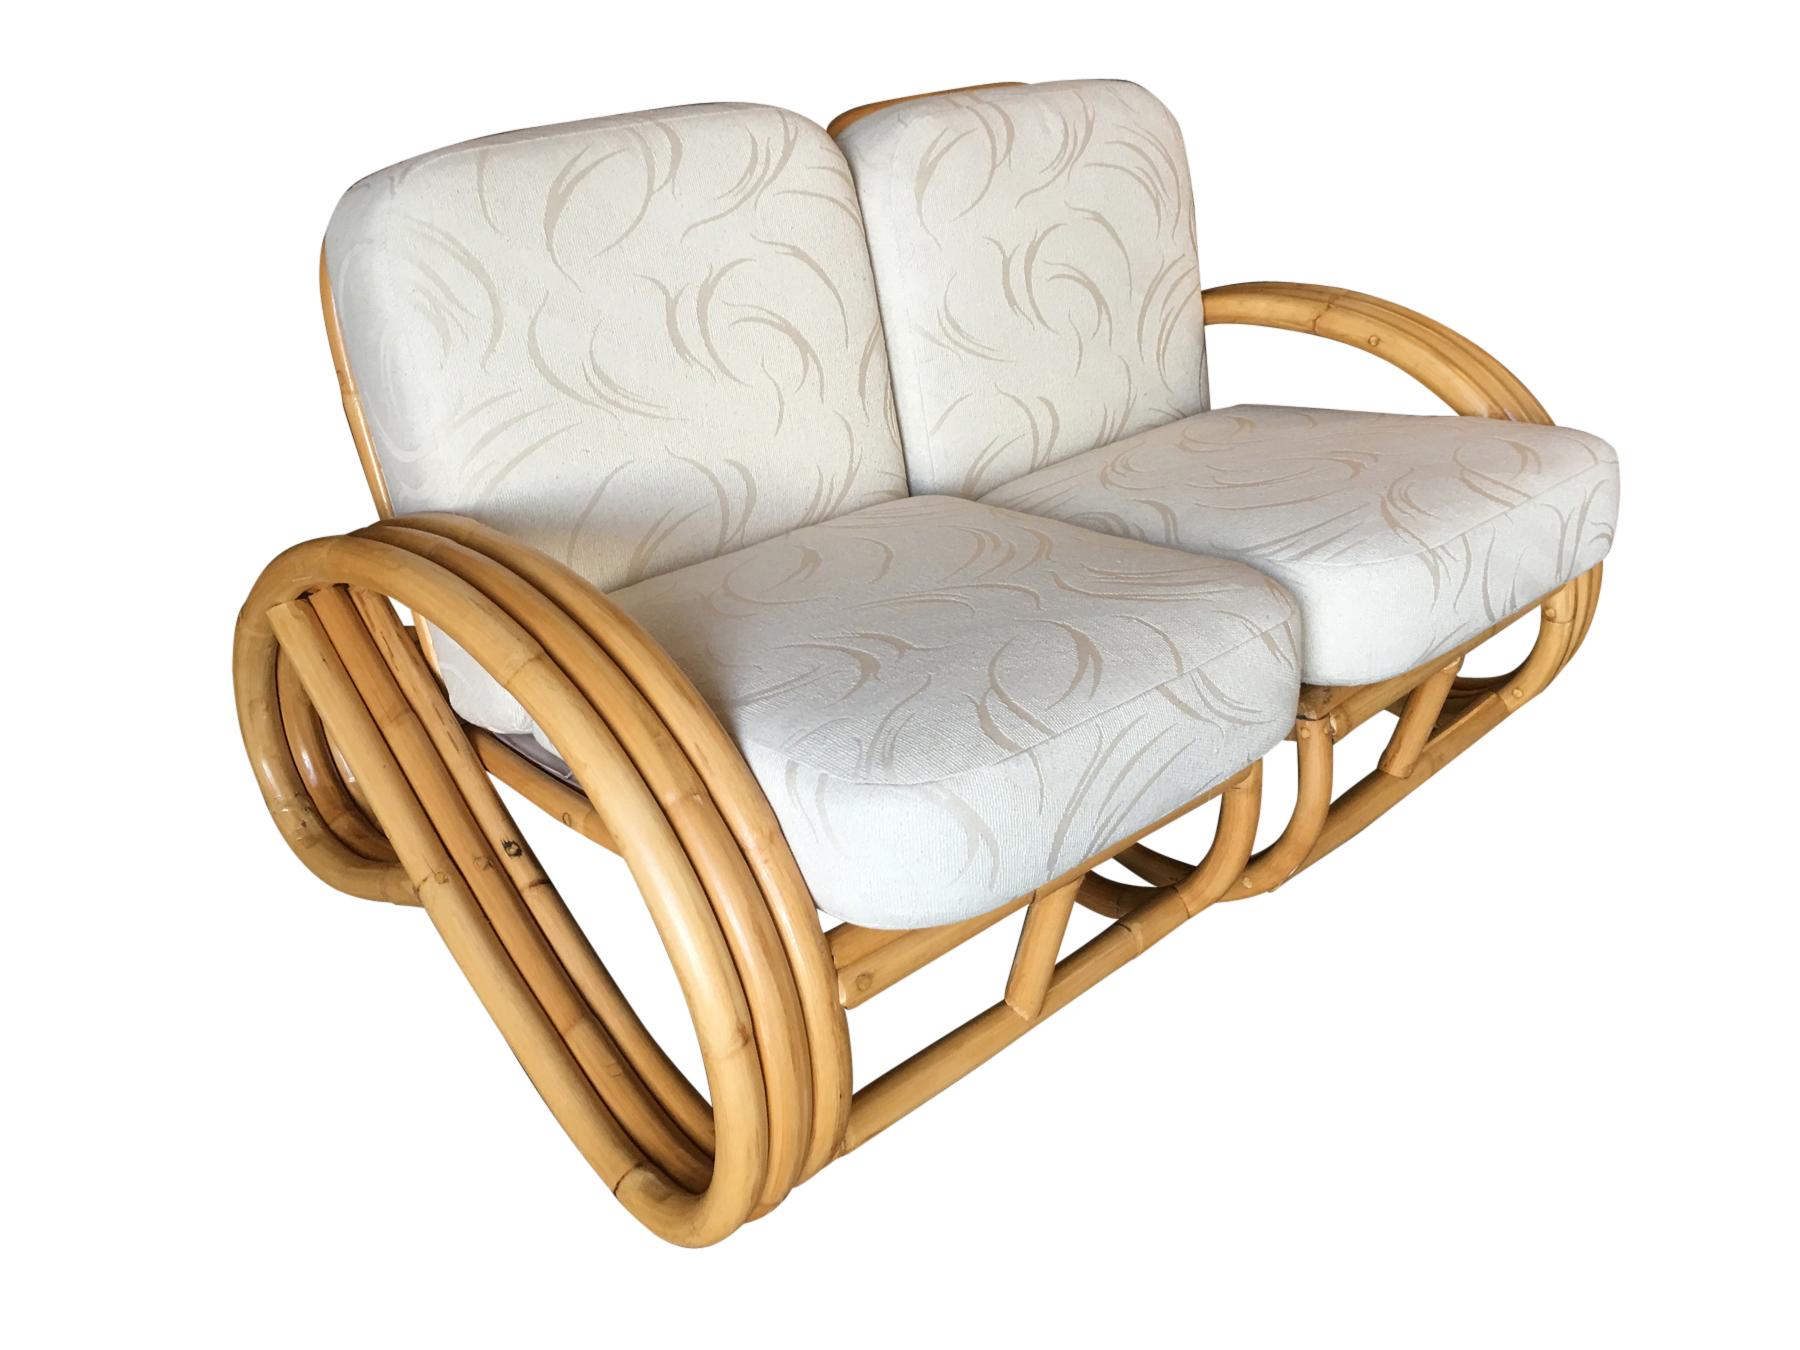 Restauriertes 2-Sitzer-Sofa aus Rattan mit 3/4-Brezel-Armlehnen und Leinenfuß. Wird mit Keilend-/Trinktisch geliefert und kann in verschiedenen Anordnungen konfiguriert werden. 

Inspiriert von Paul Frankl ist diese Lounge eine der seltensten aller